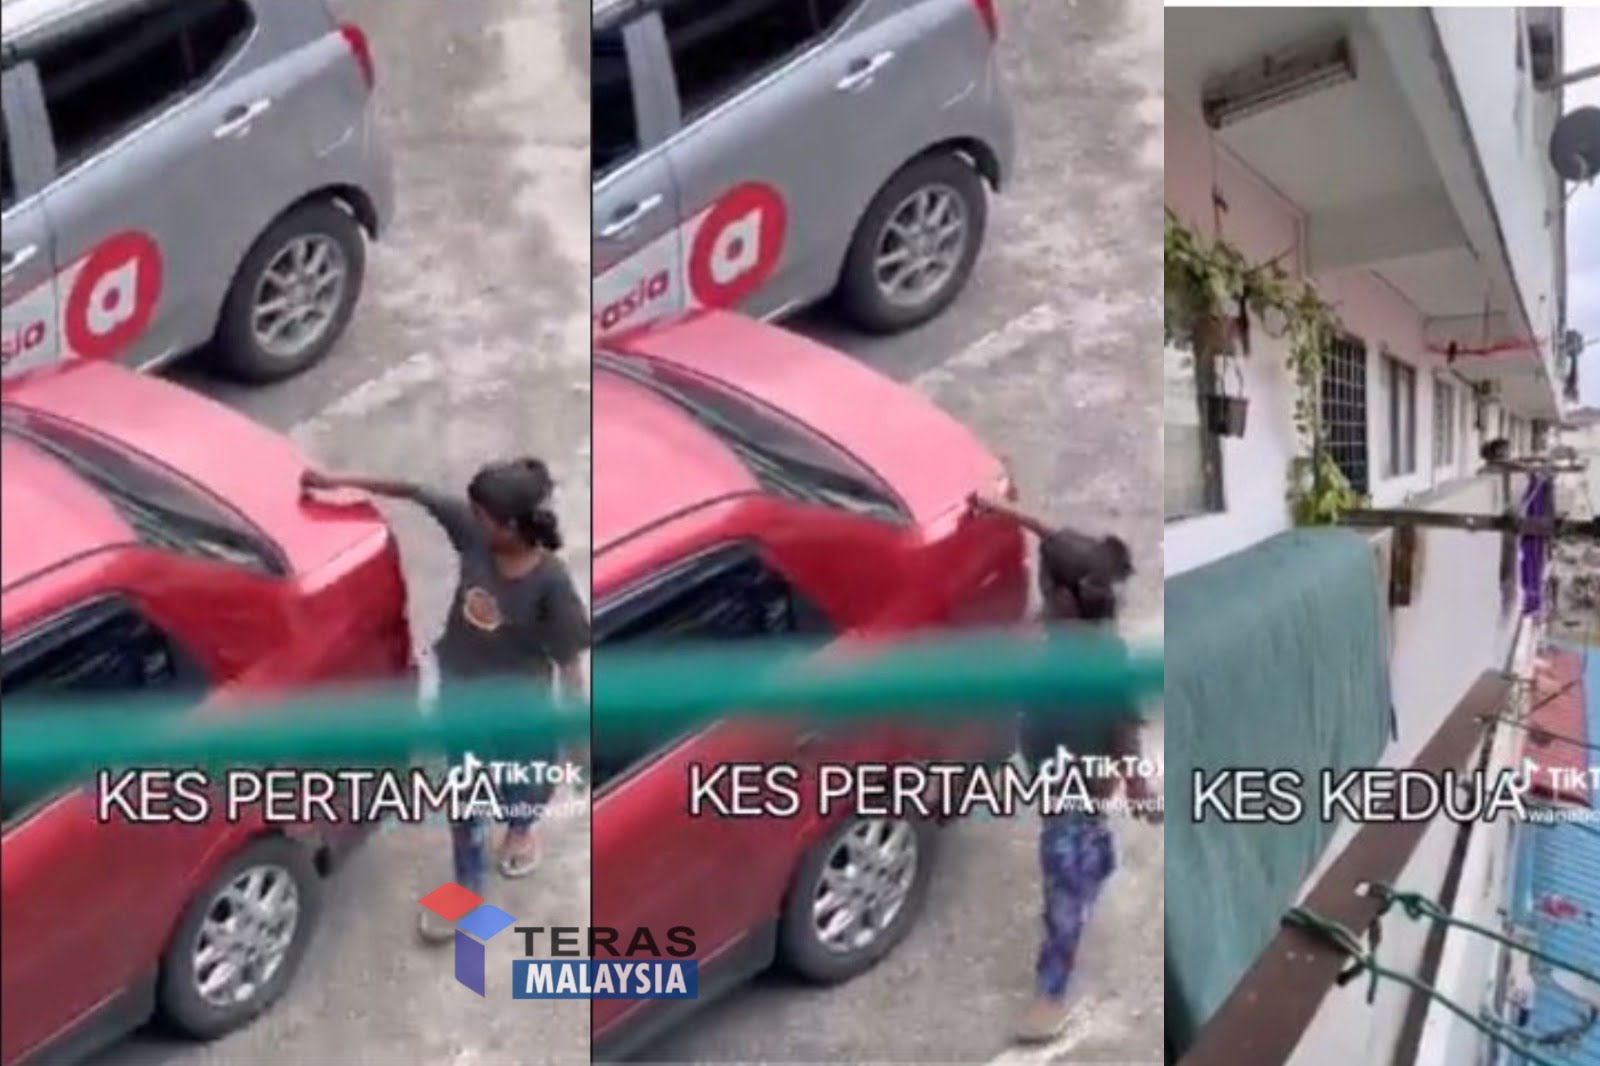 Nenek mohon maaf sebab cucu selamba calar kereta jiran tapi netizen tetap tak puas hati